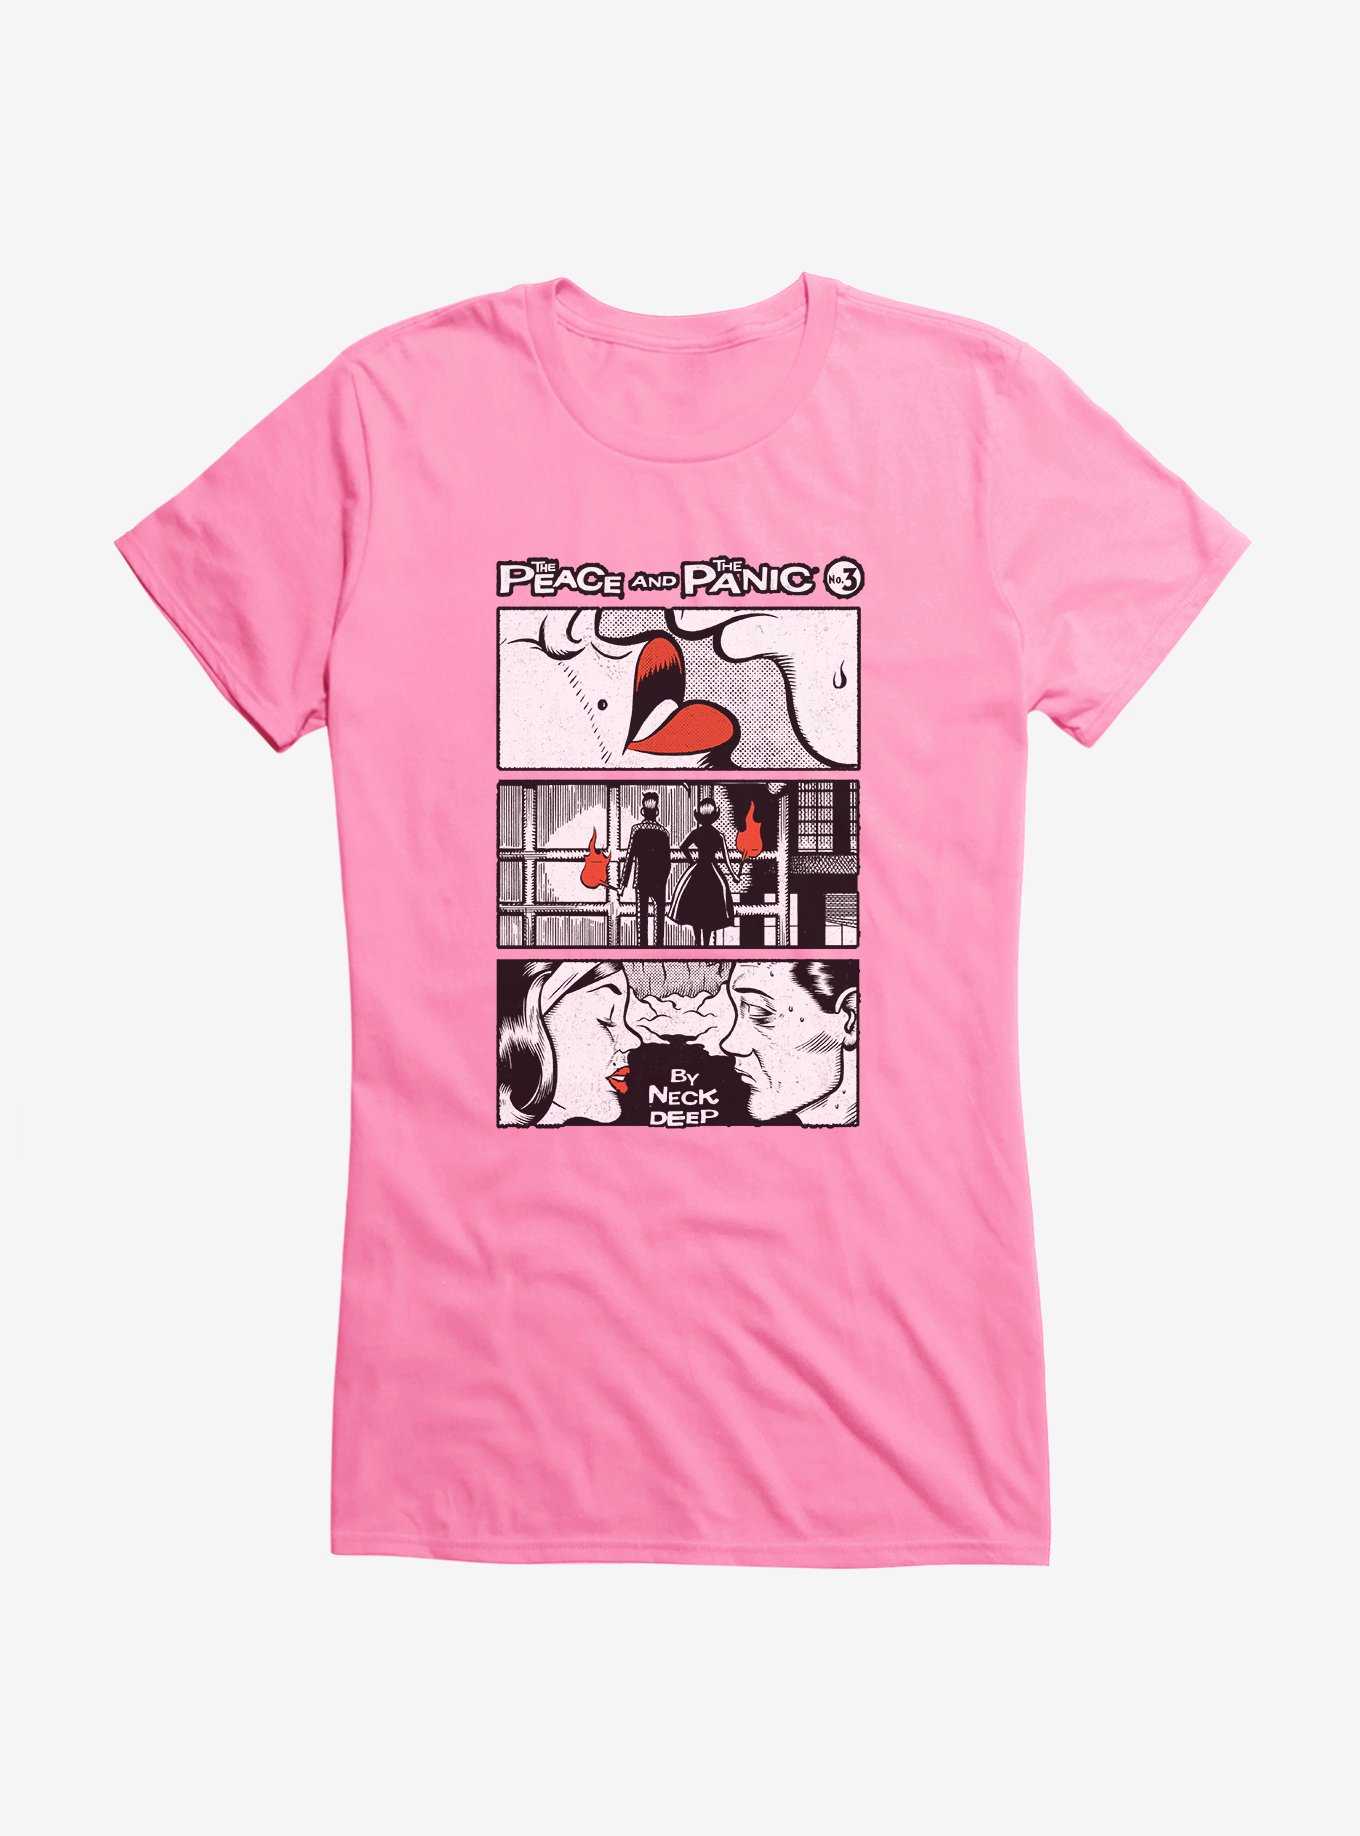 Neck Deep Comic Panel Girls T-Shirt, , hi-res